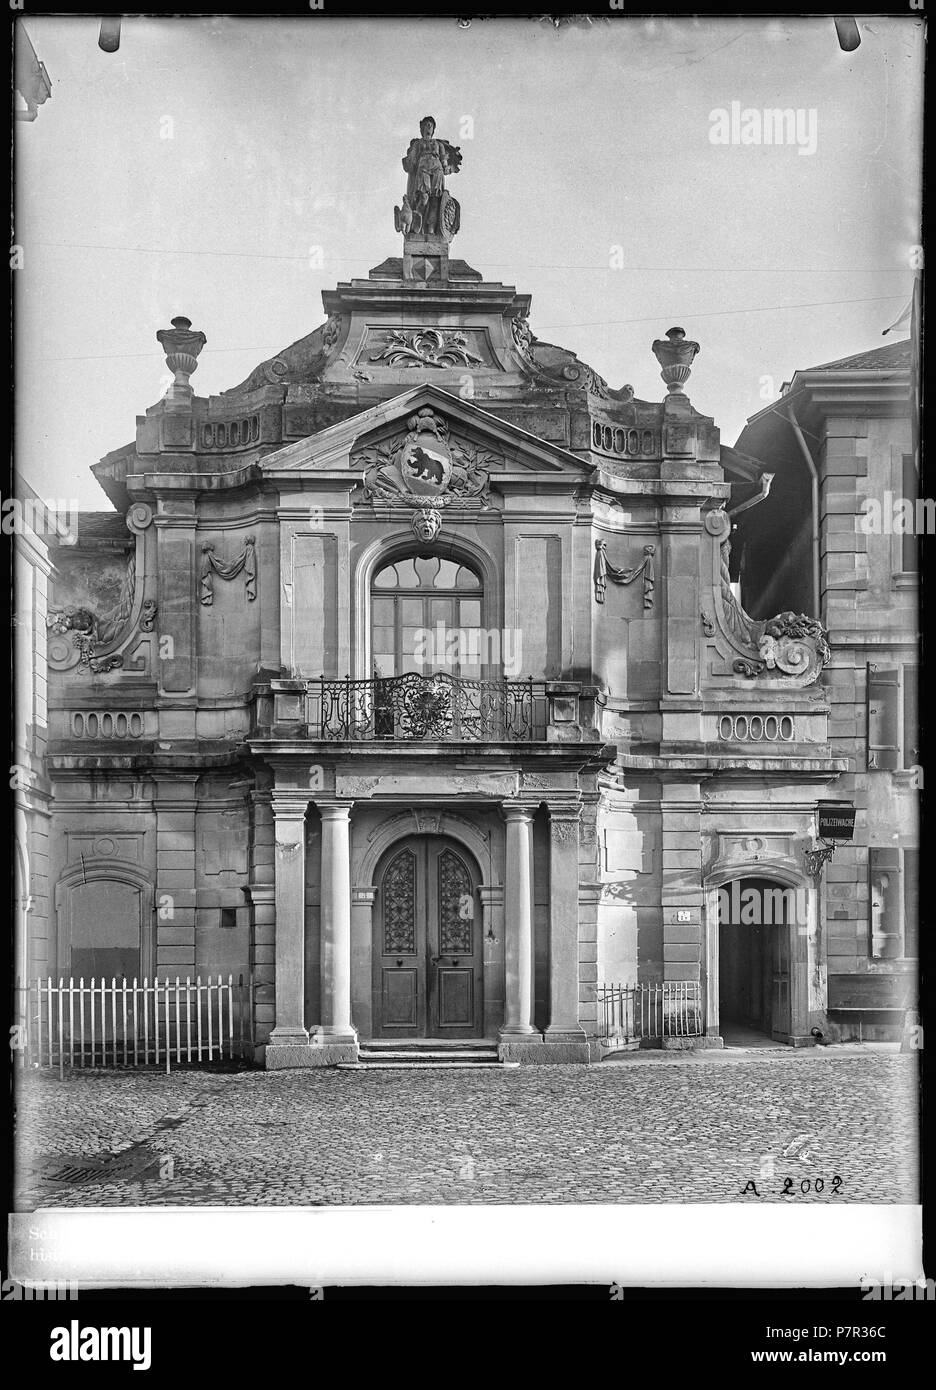 67 CH-NB - Bern, altes Historisches Museum, vue partielle extérieure - Collection Max van Berchem - EAD-6615 Stock Photo